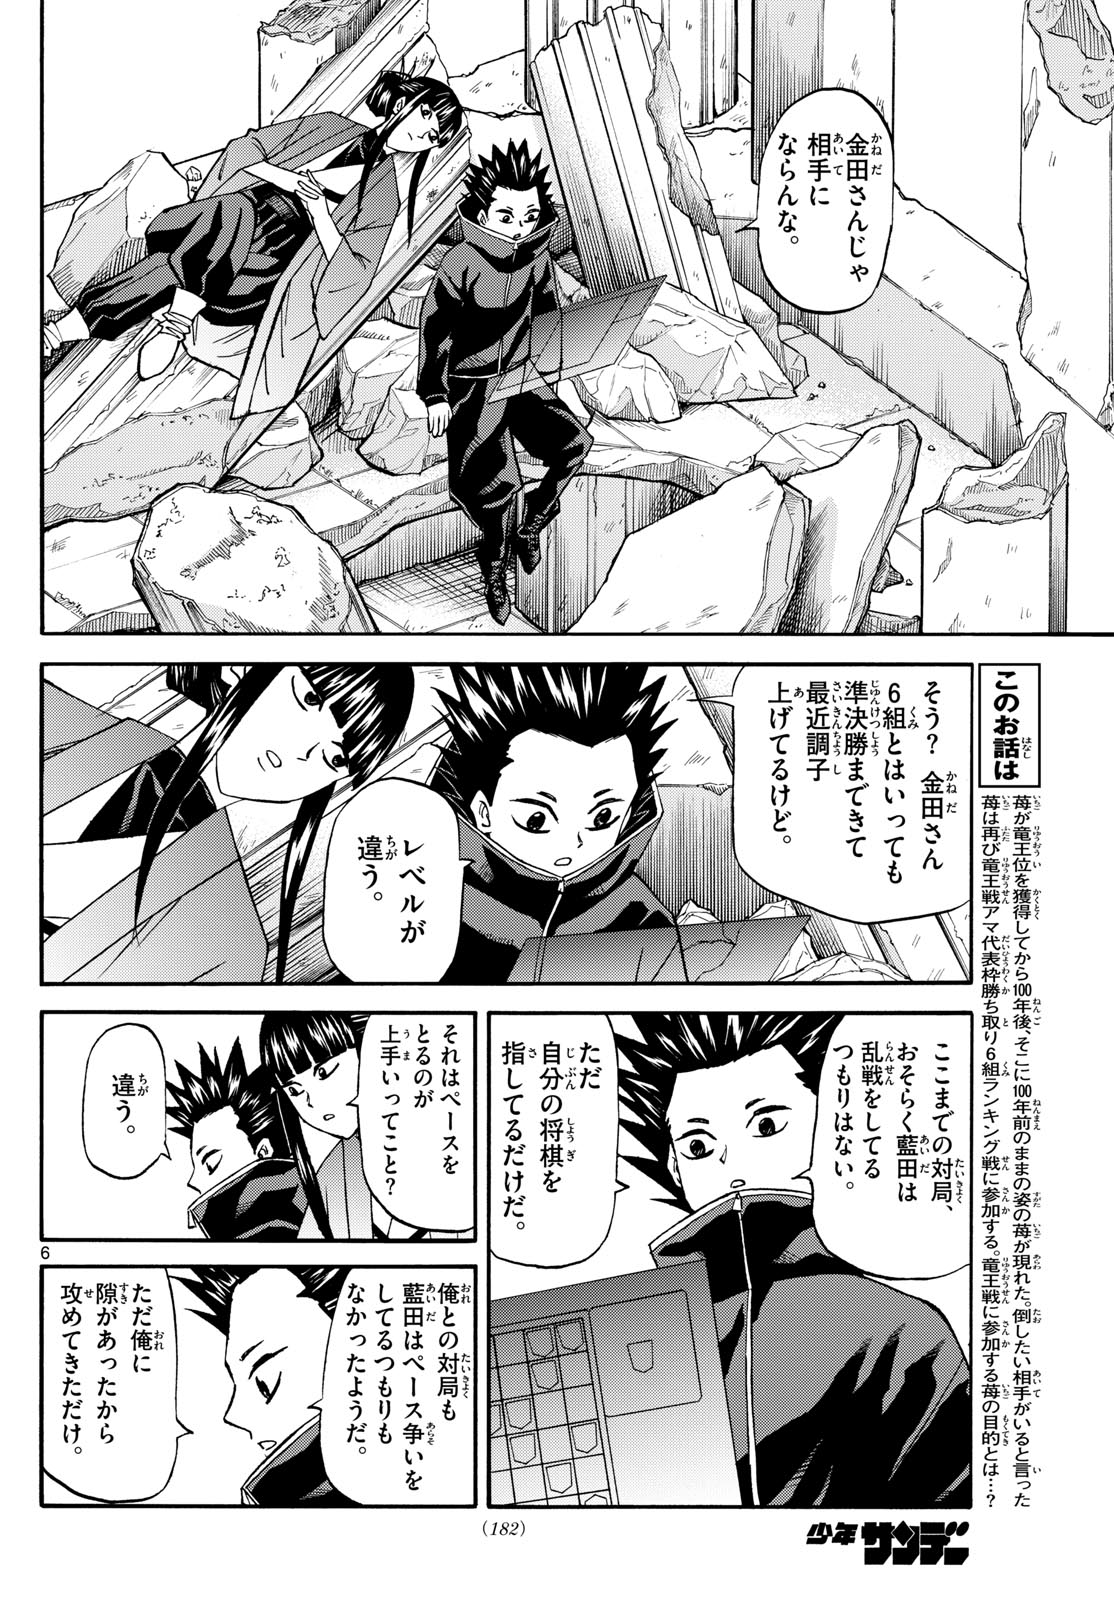 Tatsu to Ichigo - Chapter 192 - Page 6